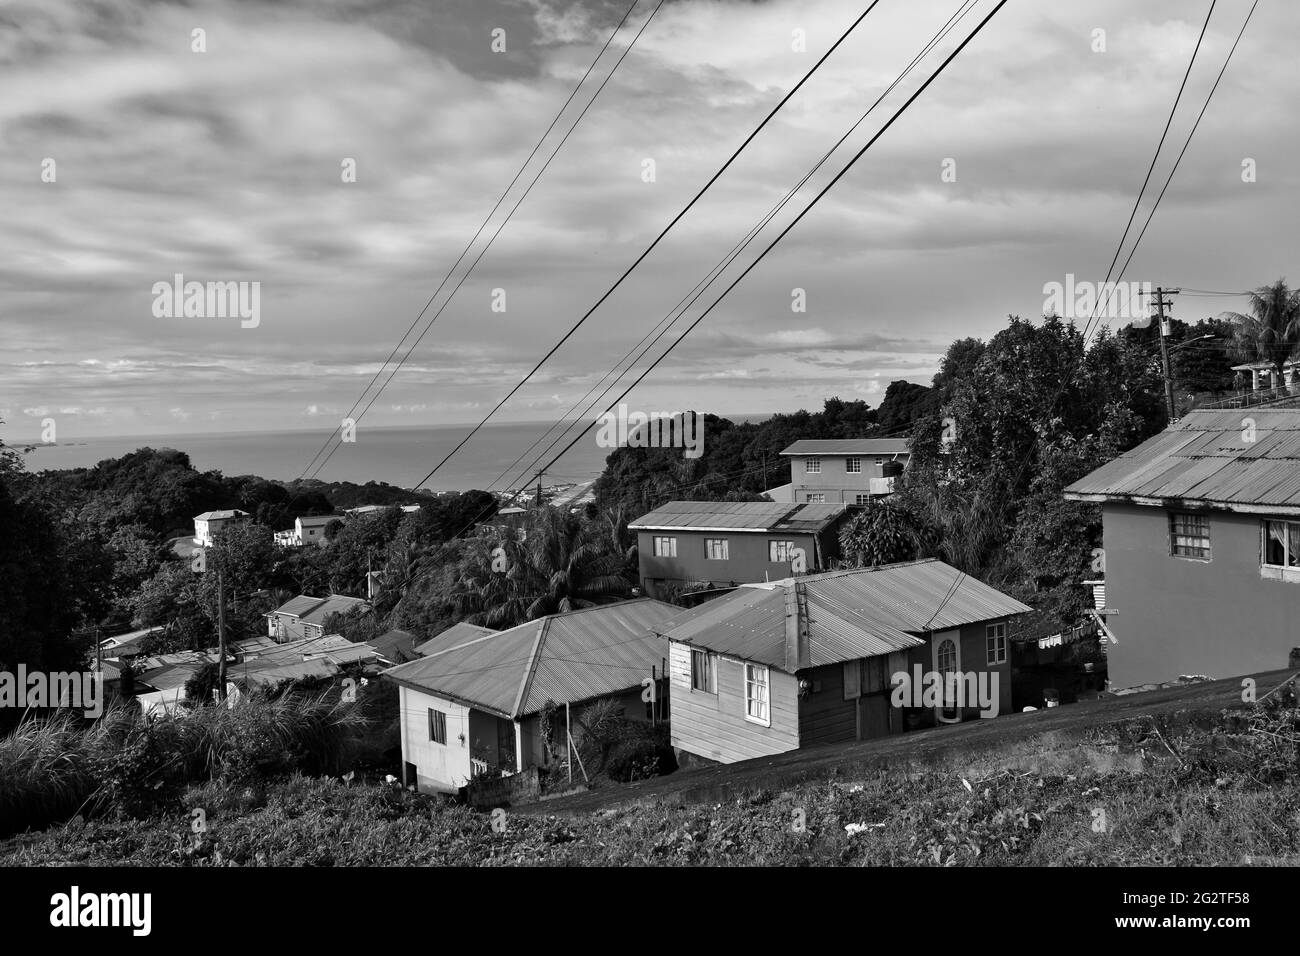 Saint-George, Saint-Vincent-et-les Grenadines - 4 janvier 2020 : vue depuis l'autoroute Mespo, Saint-George. Banque D'Images